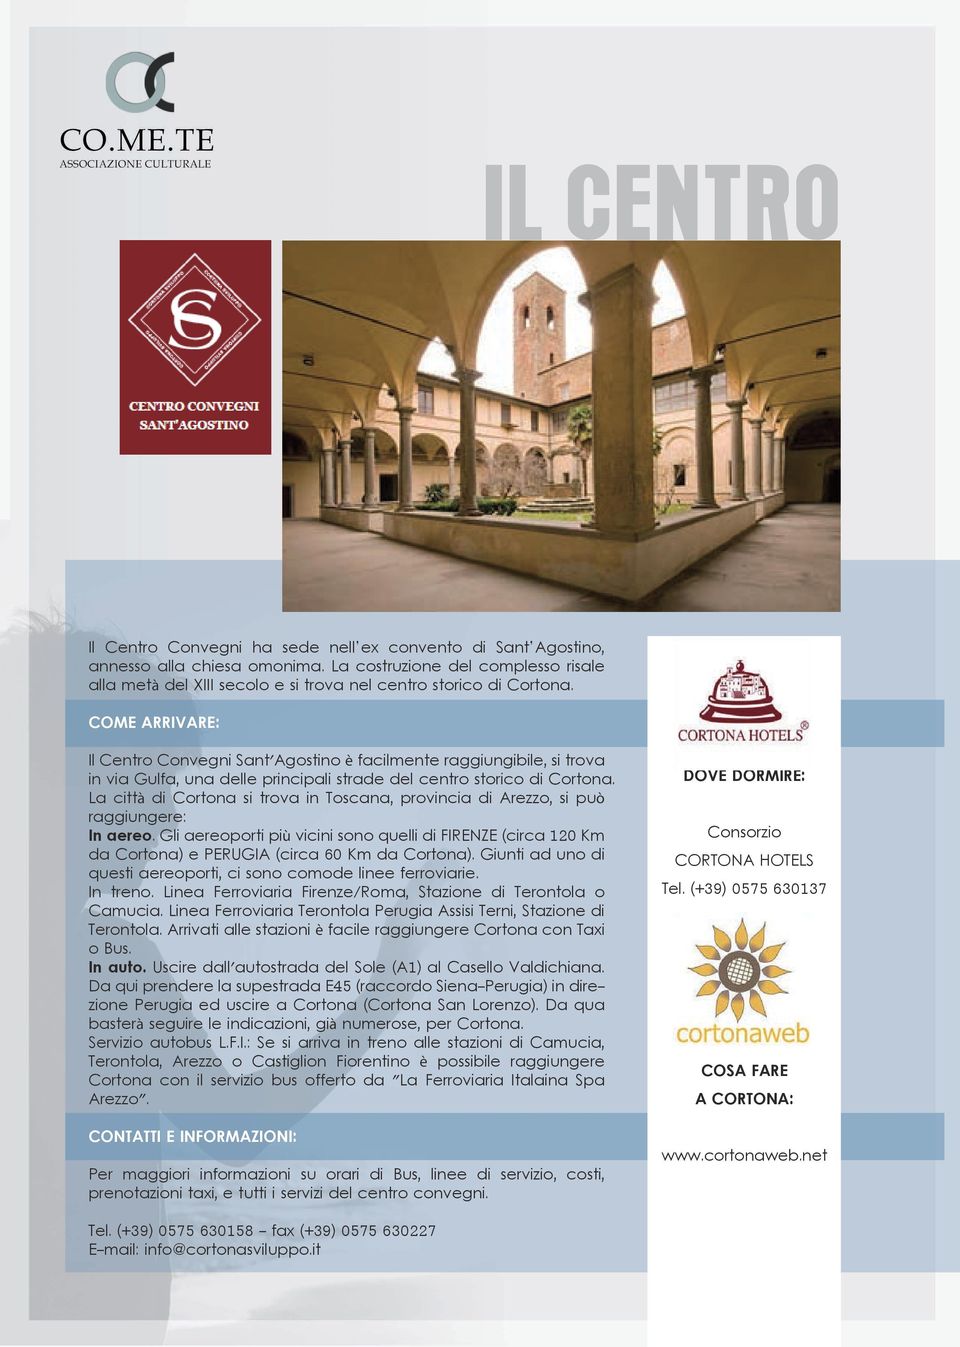 COME ARRIVARE: Il Centro Convegni Sant'Agostino è facilmente raggiungibile, si trova in via Gulfa, una delle principali strade del centro storico di Cortona.